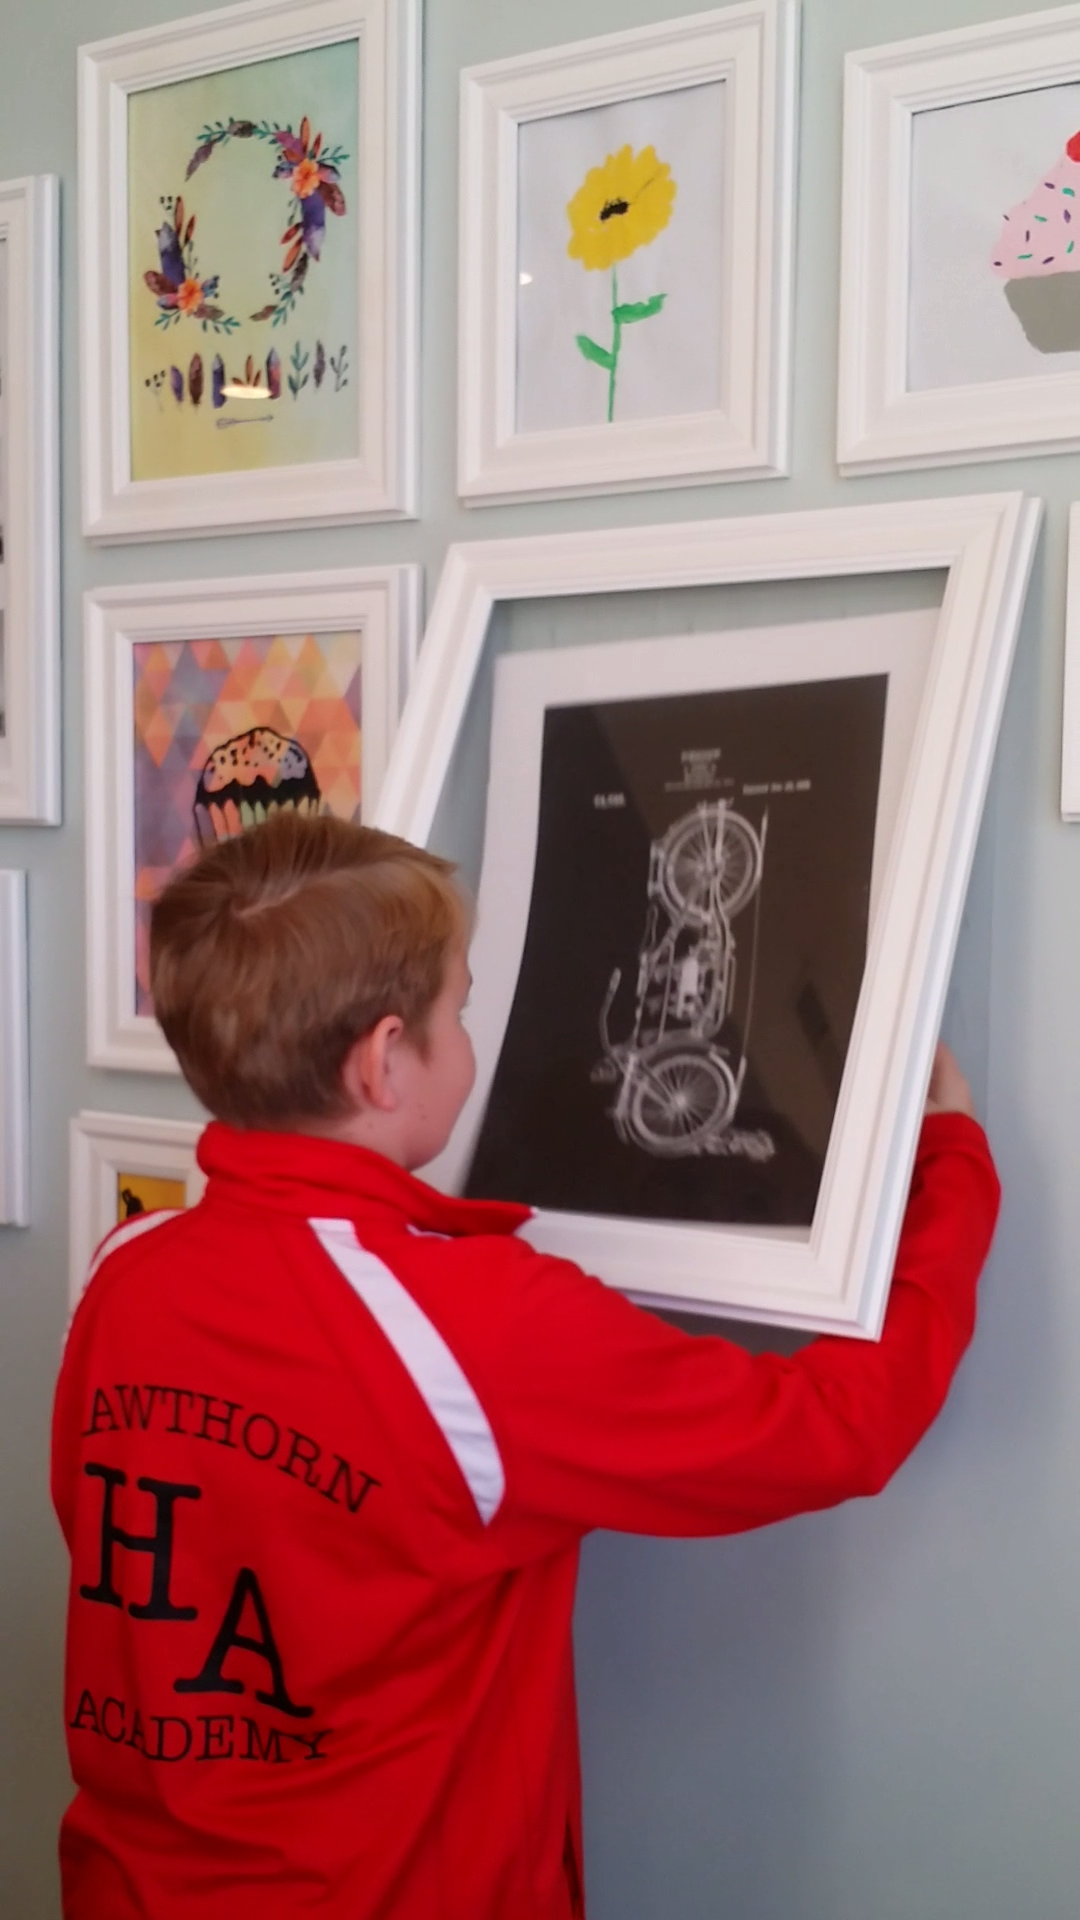 Perfect for kids art! - Perfect for kids art! -   18 diy Art display ideas